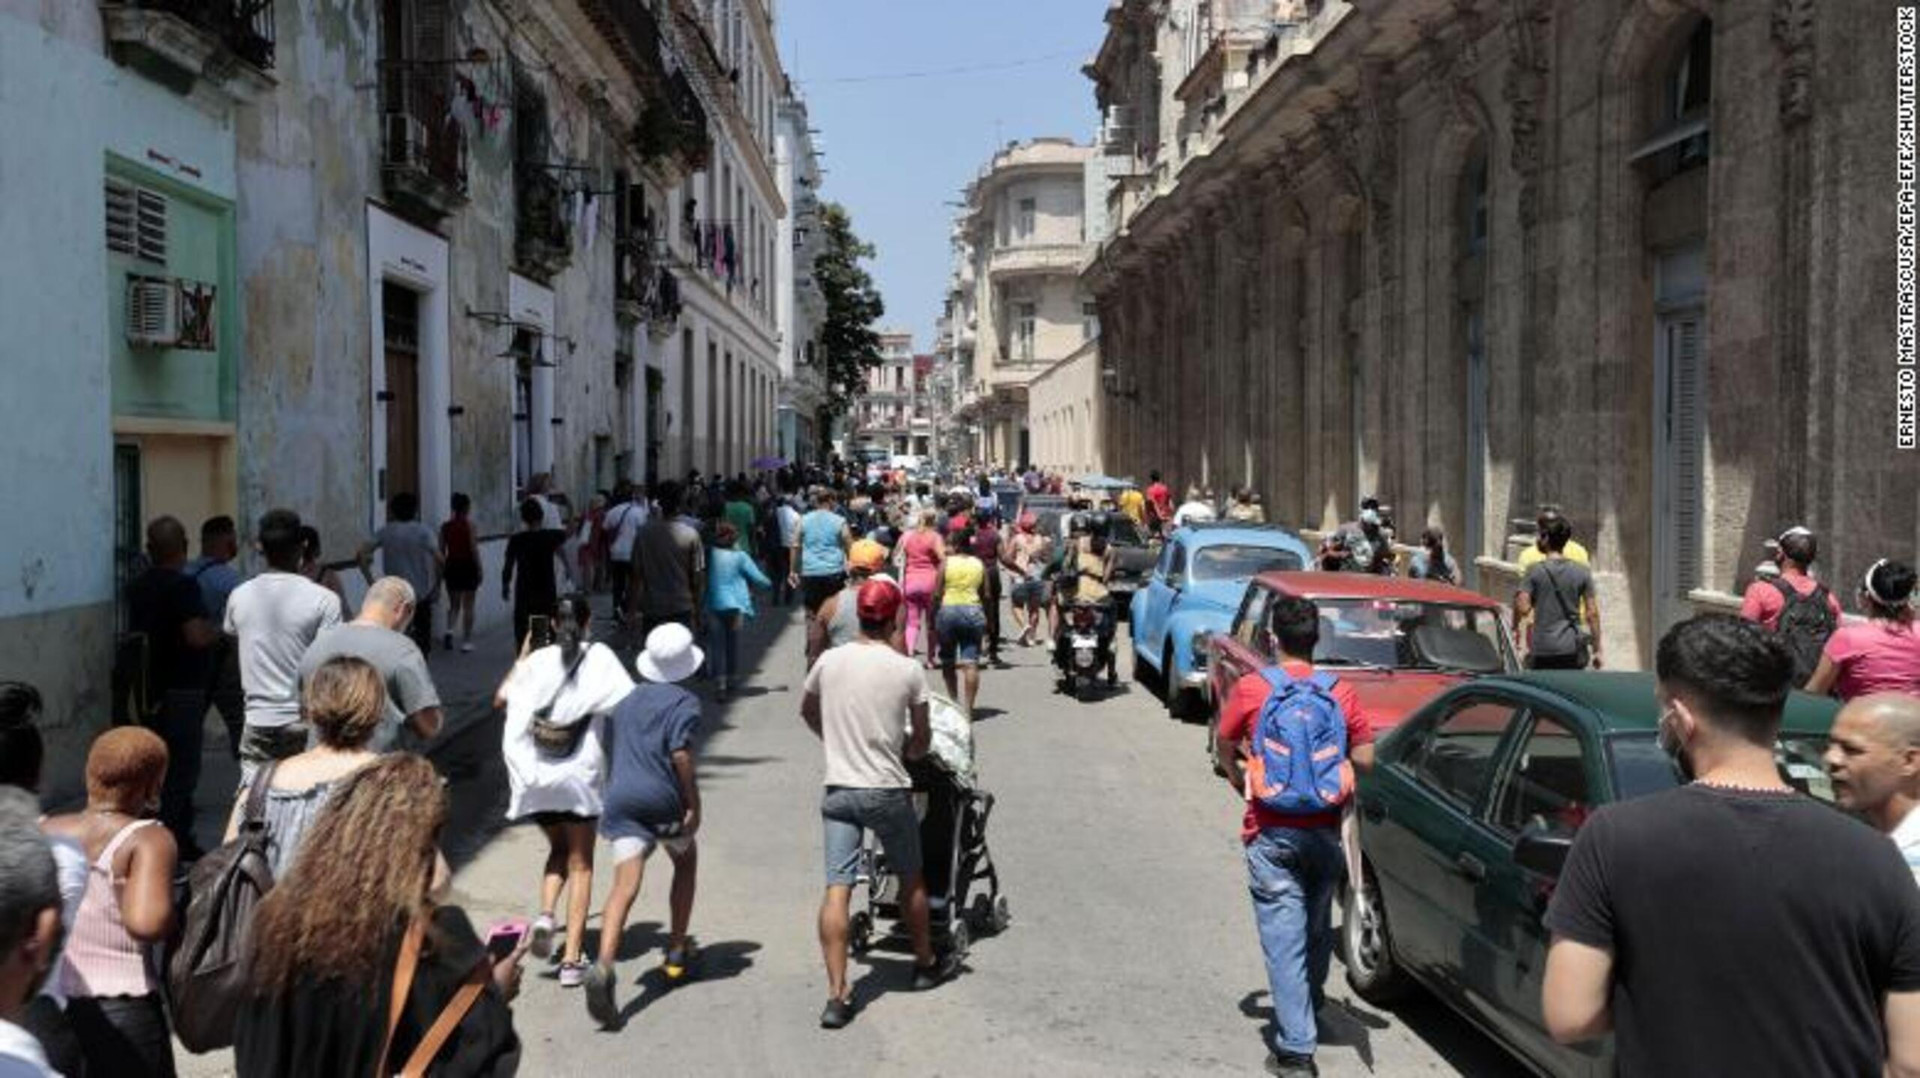 Ảnh: Hiện trường vụ nổ khiến 22 người chết tại khách sạn nổi tiếng ở Cuba - 7